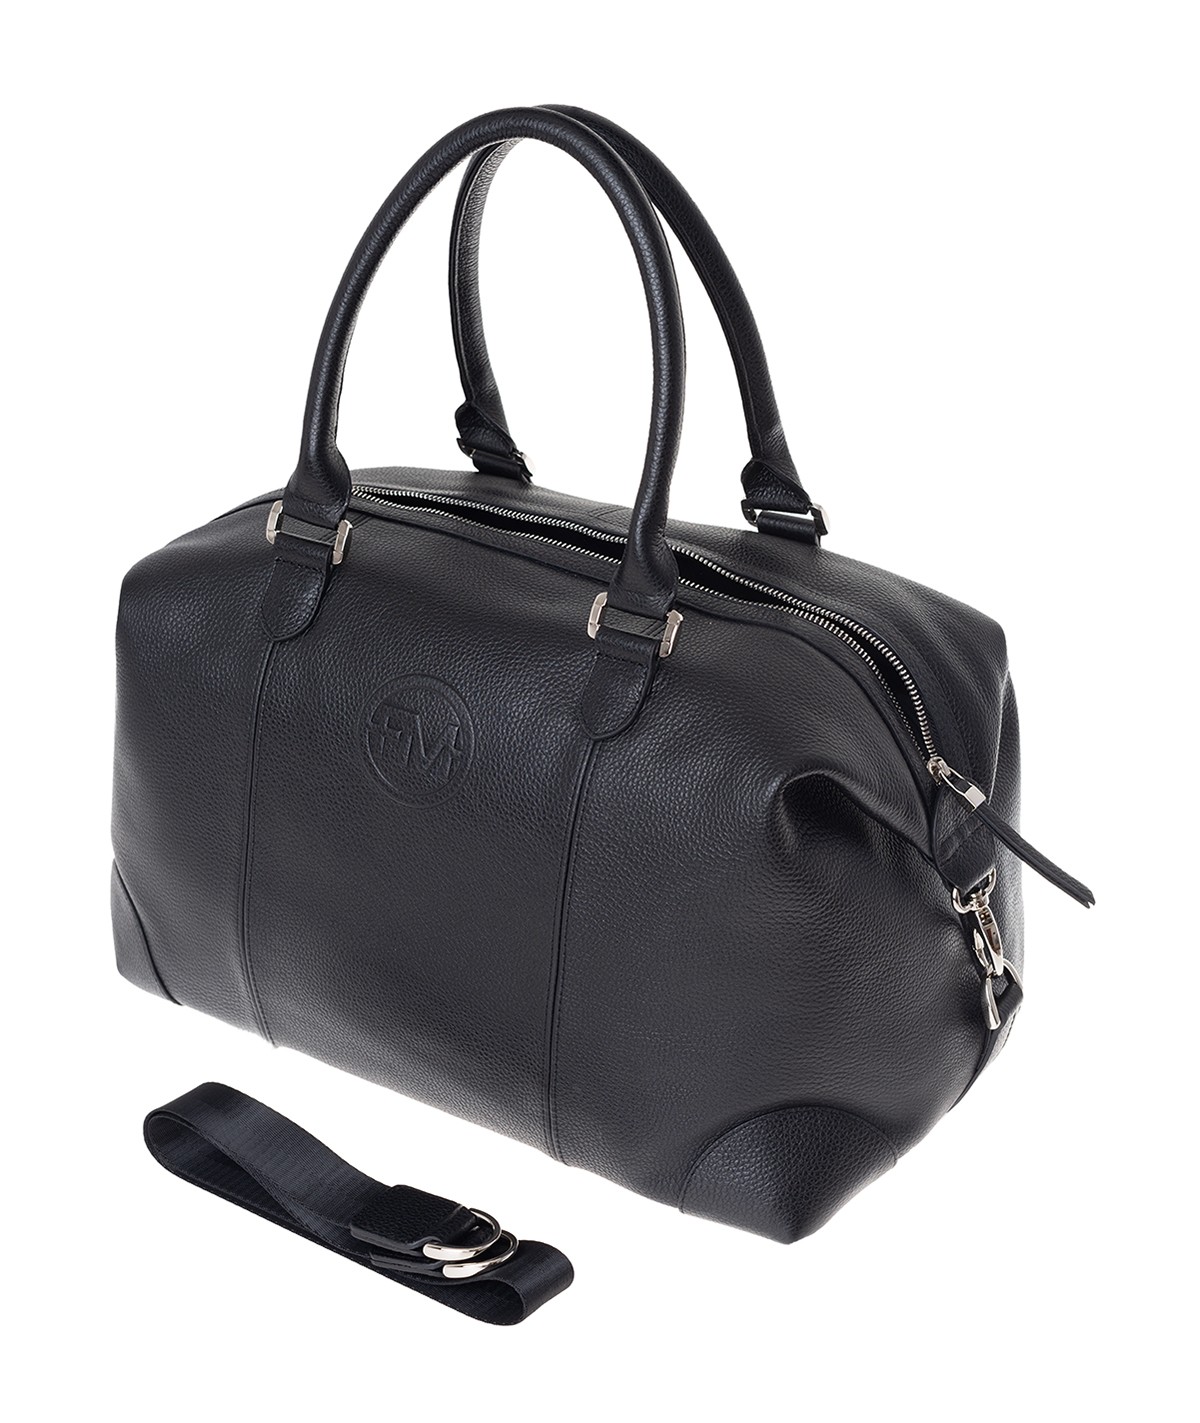 Дорожная сумка унисекс Franchesco Mariscotti 6-426 черная, 42х28x24 см